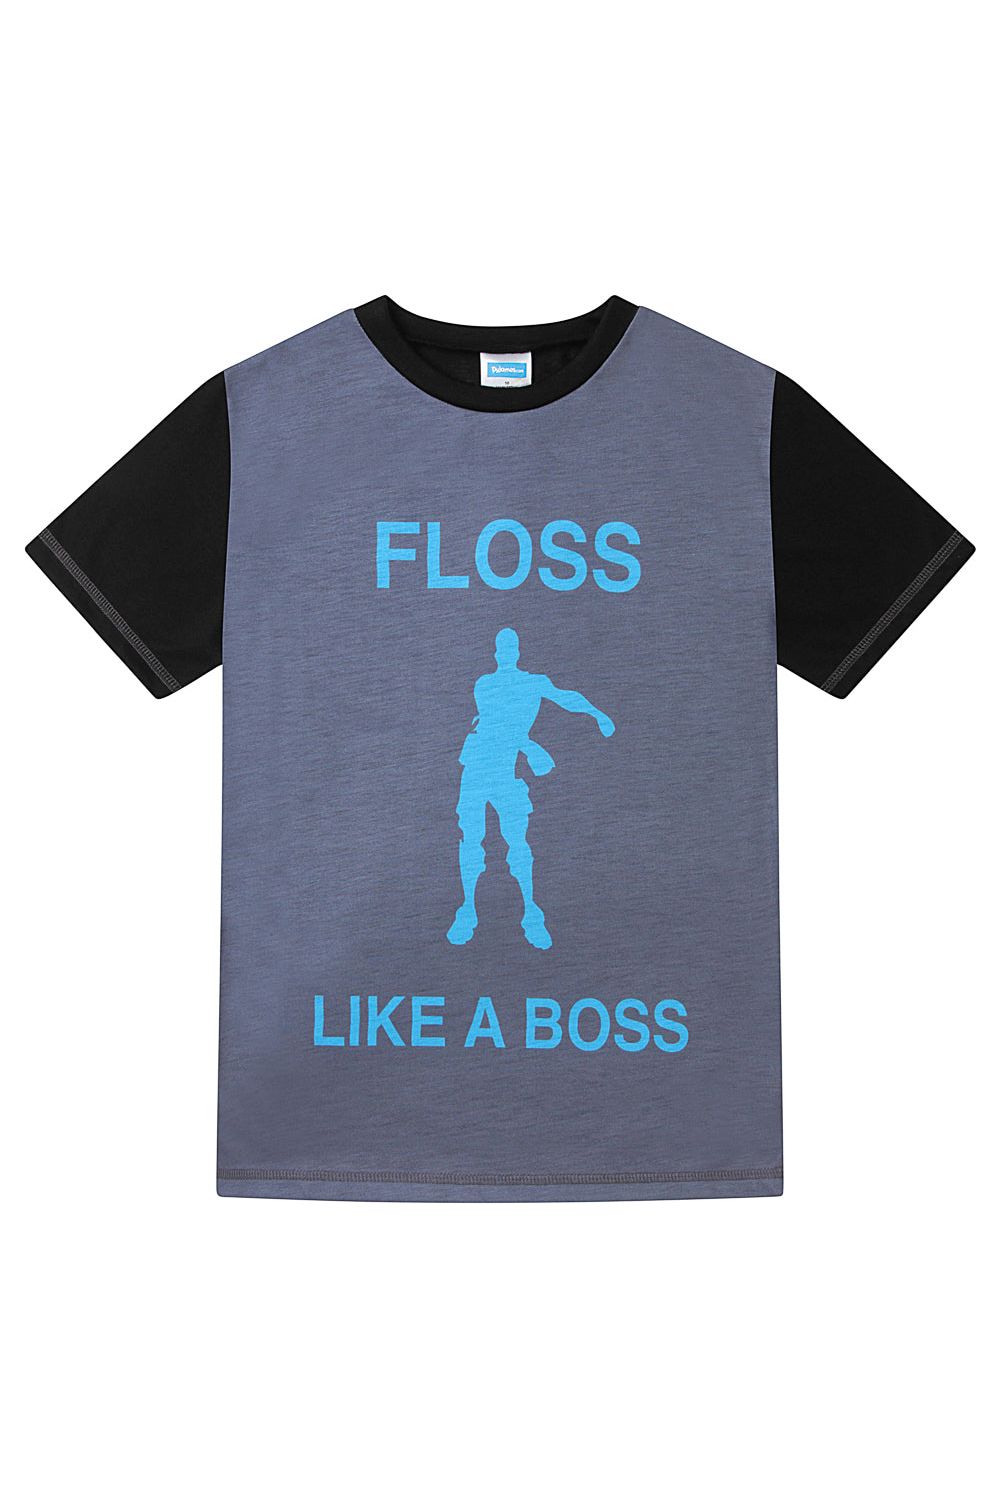 Floss Like a Boss  Emote Dance Gaming Short Pyjamas Blue - Pyjamas.com